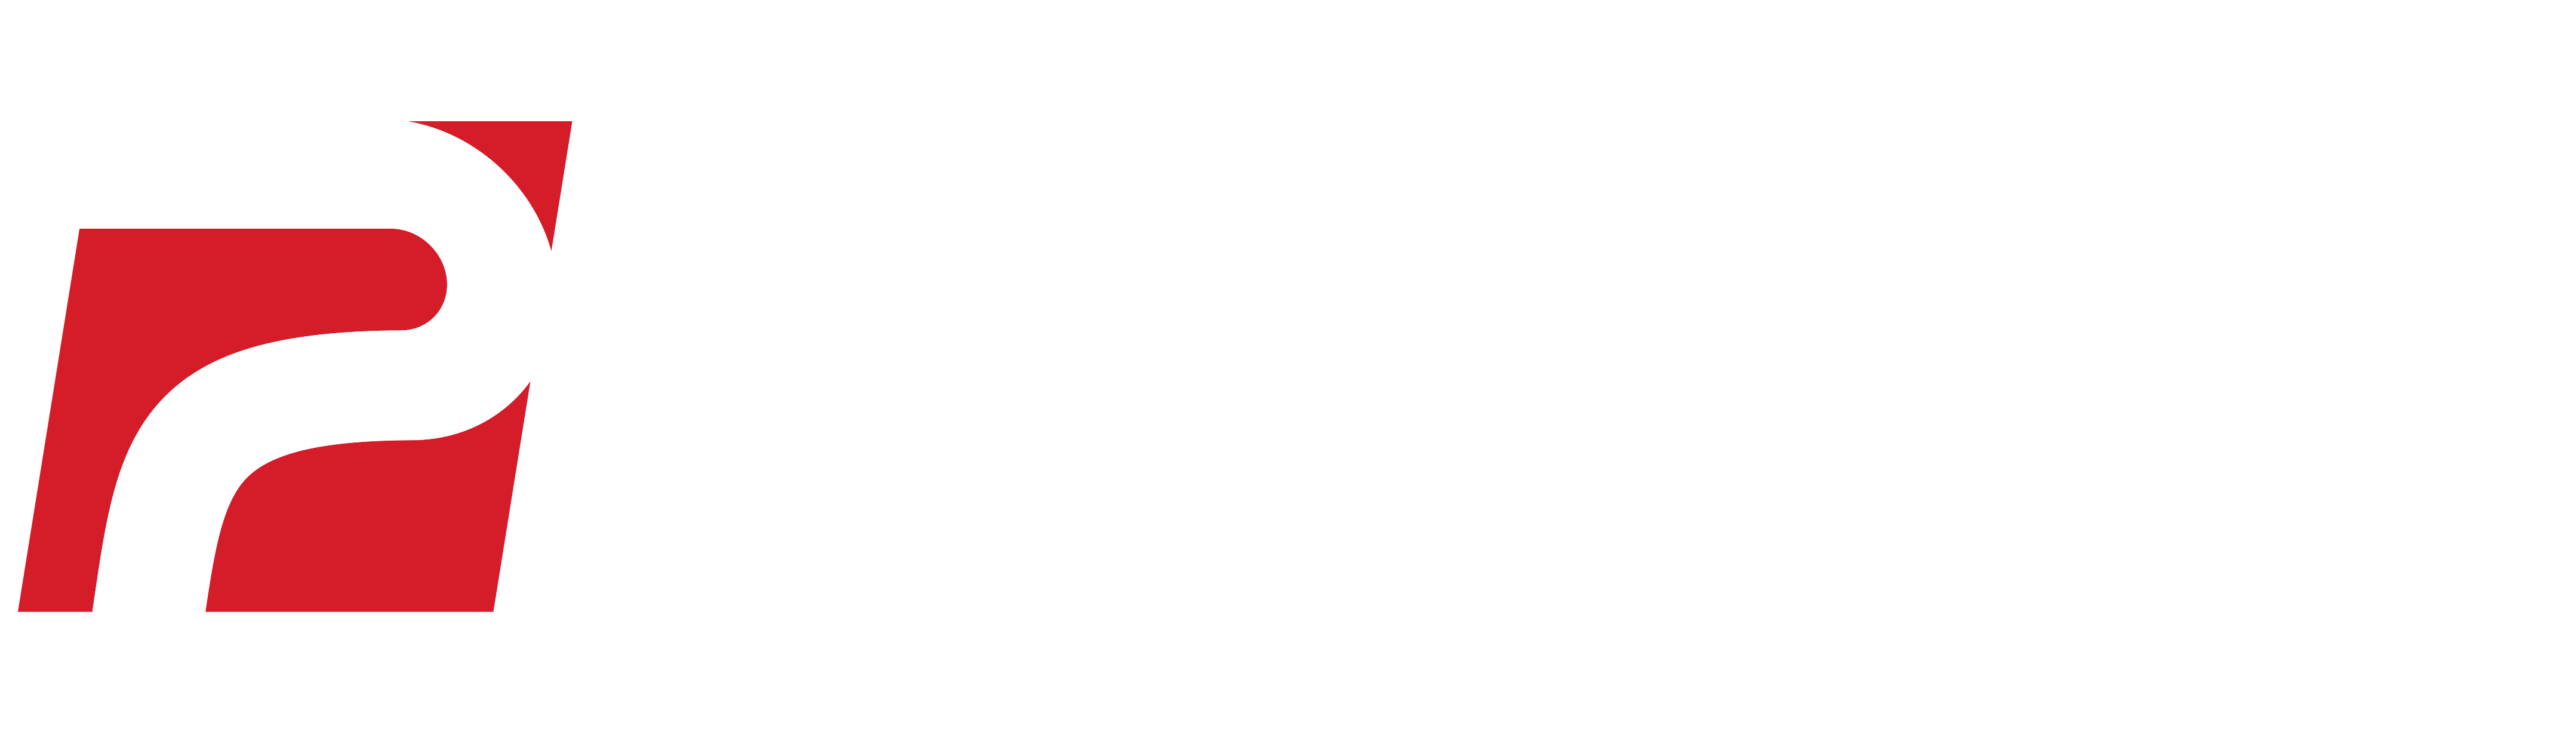 Pedder Auto Group White Logo